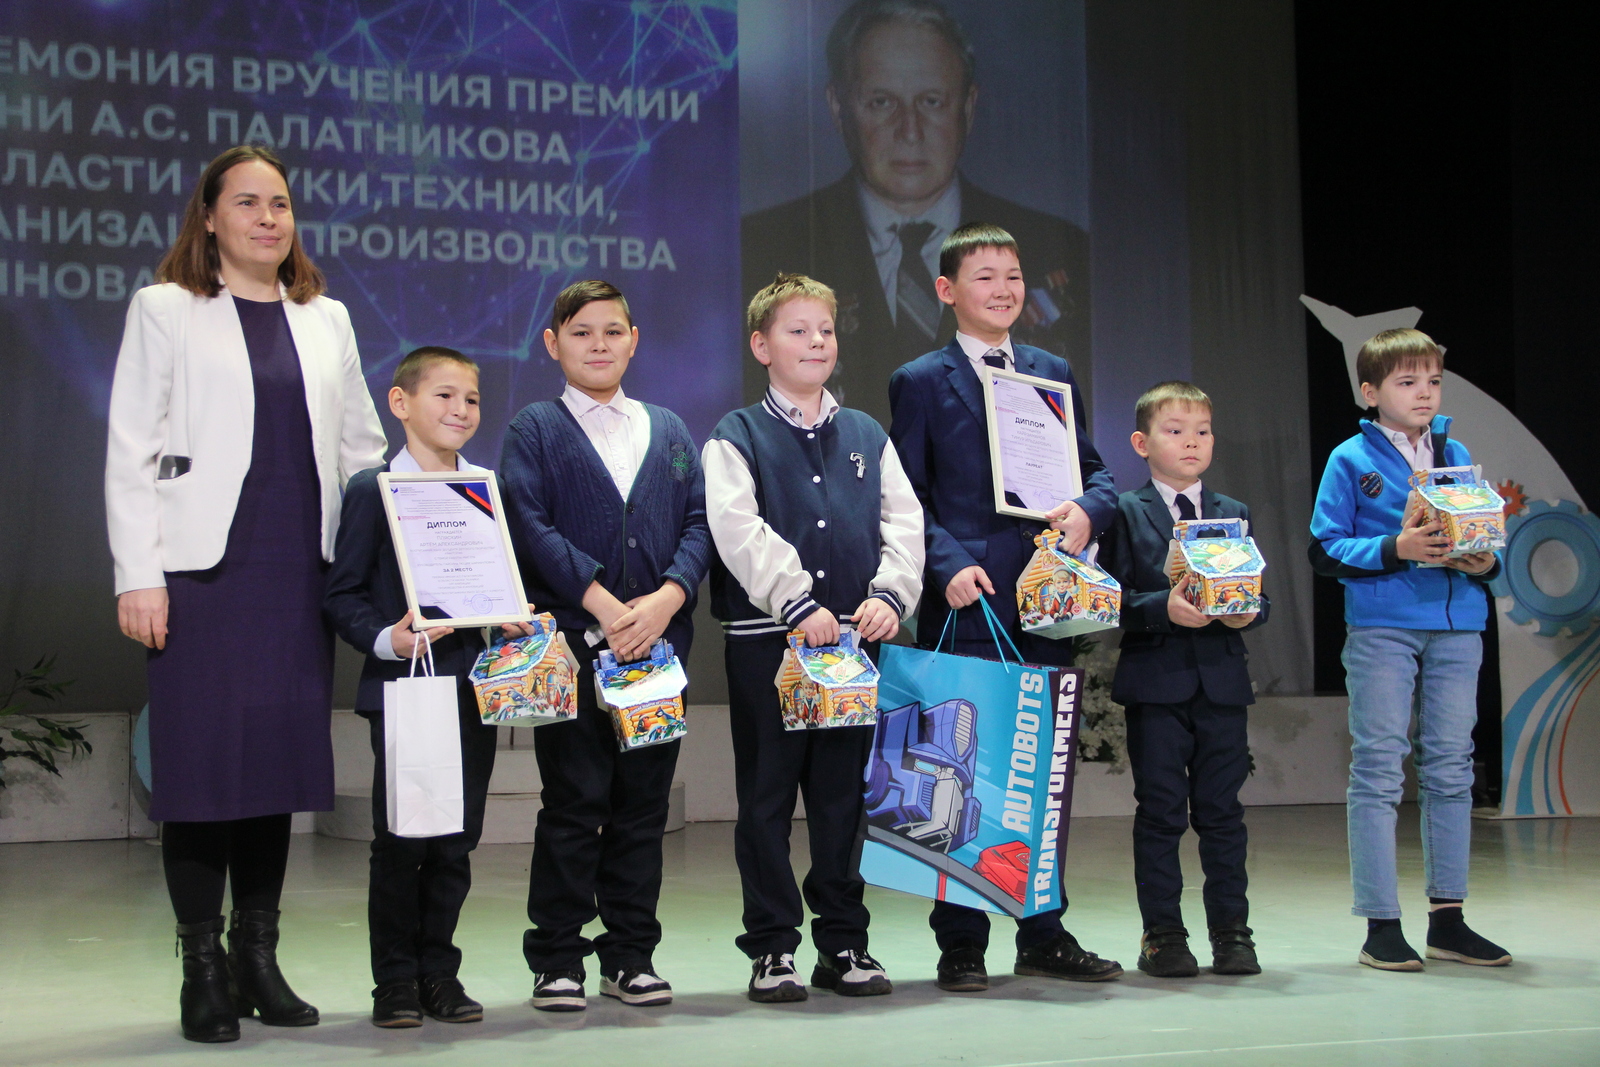 Состоялась торжественная церемония награждения участников и победителей традиционного конкурса премии имени А.С. Палатникова